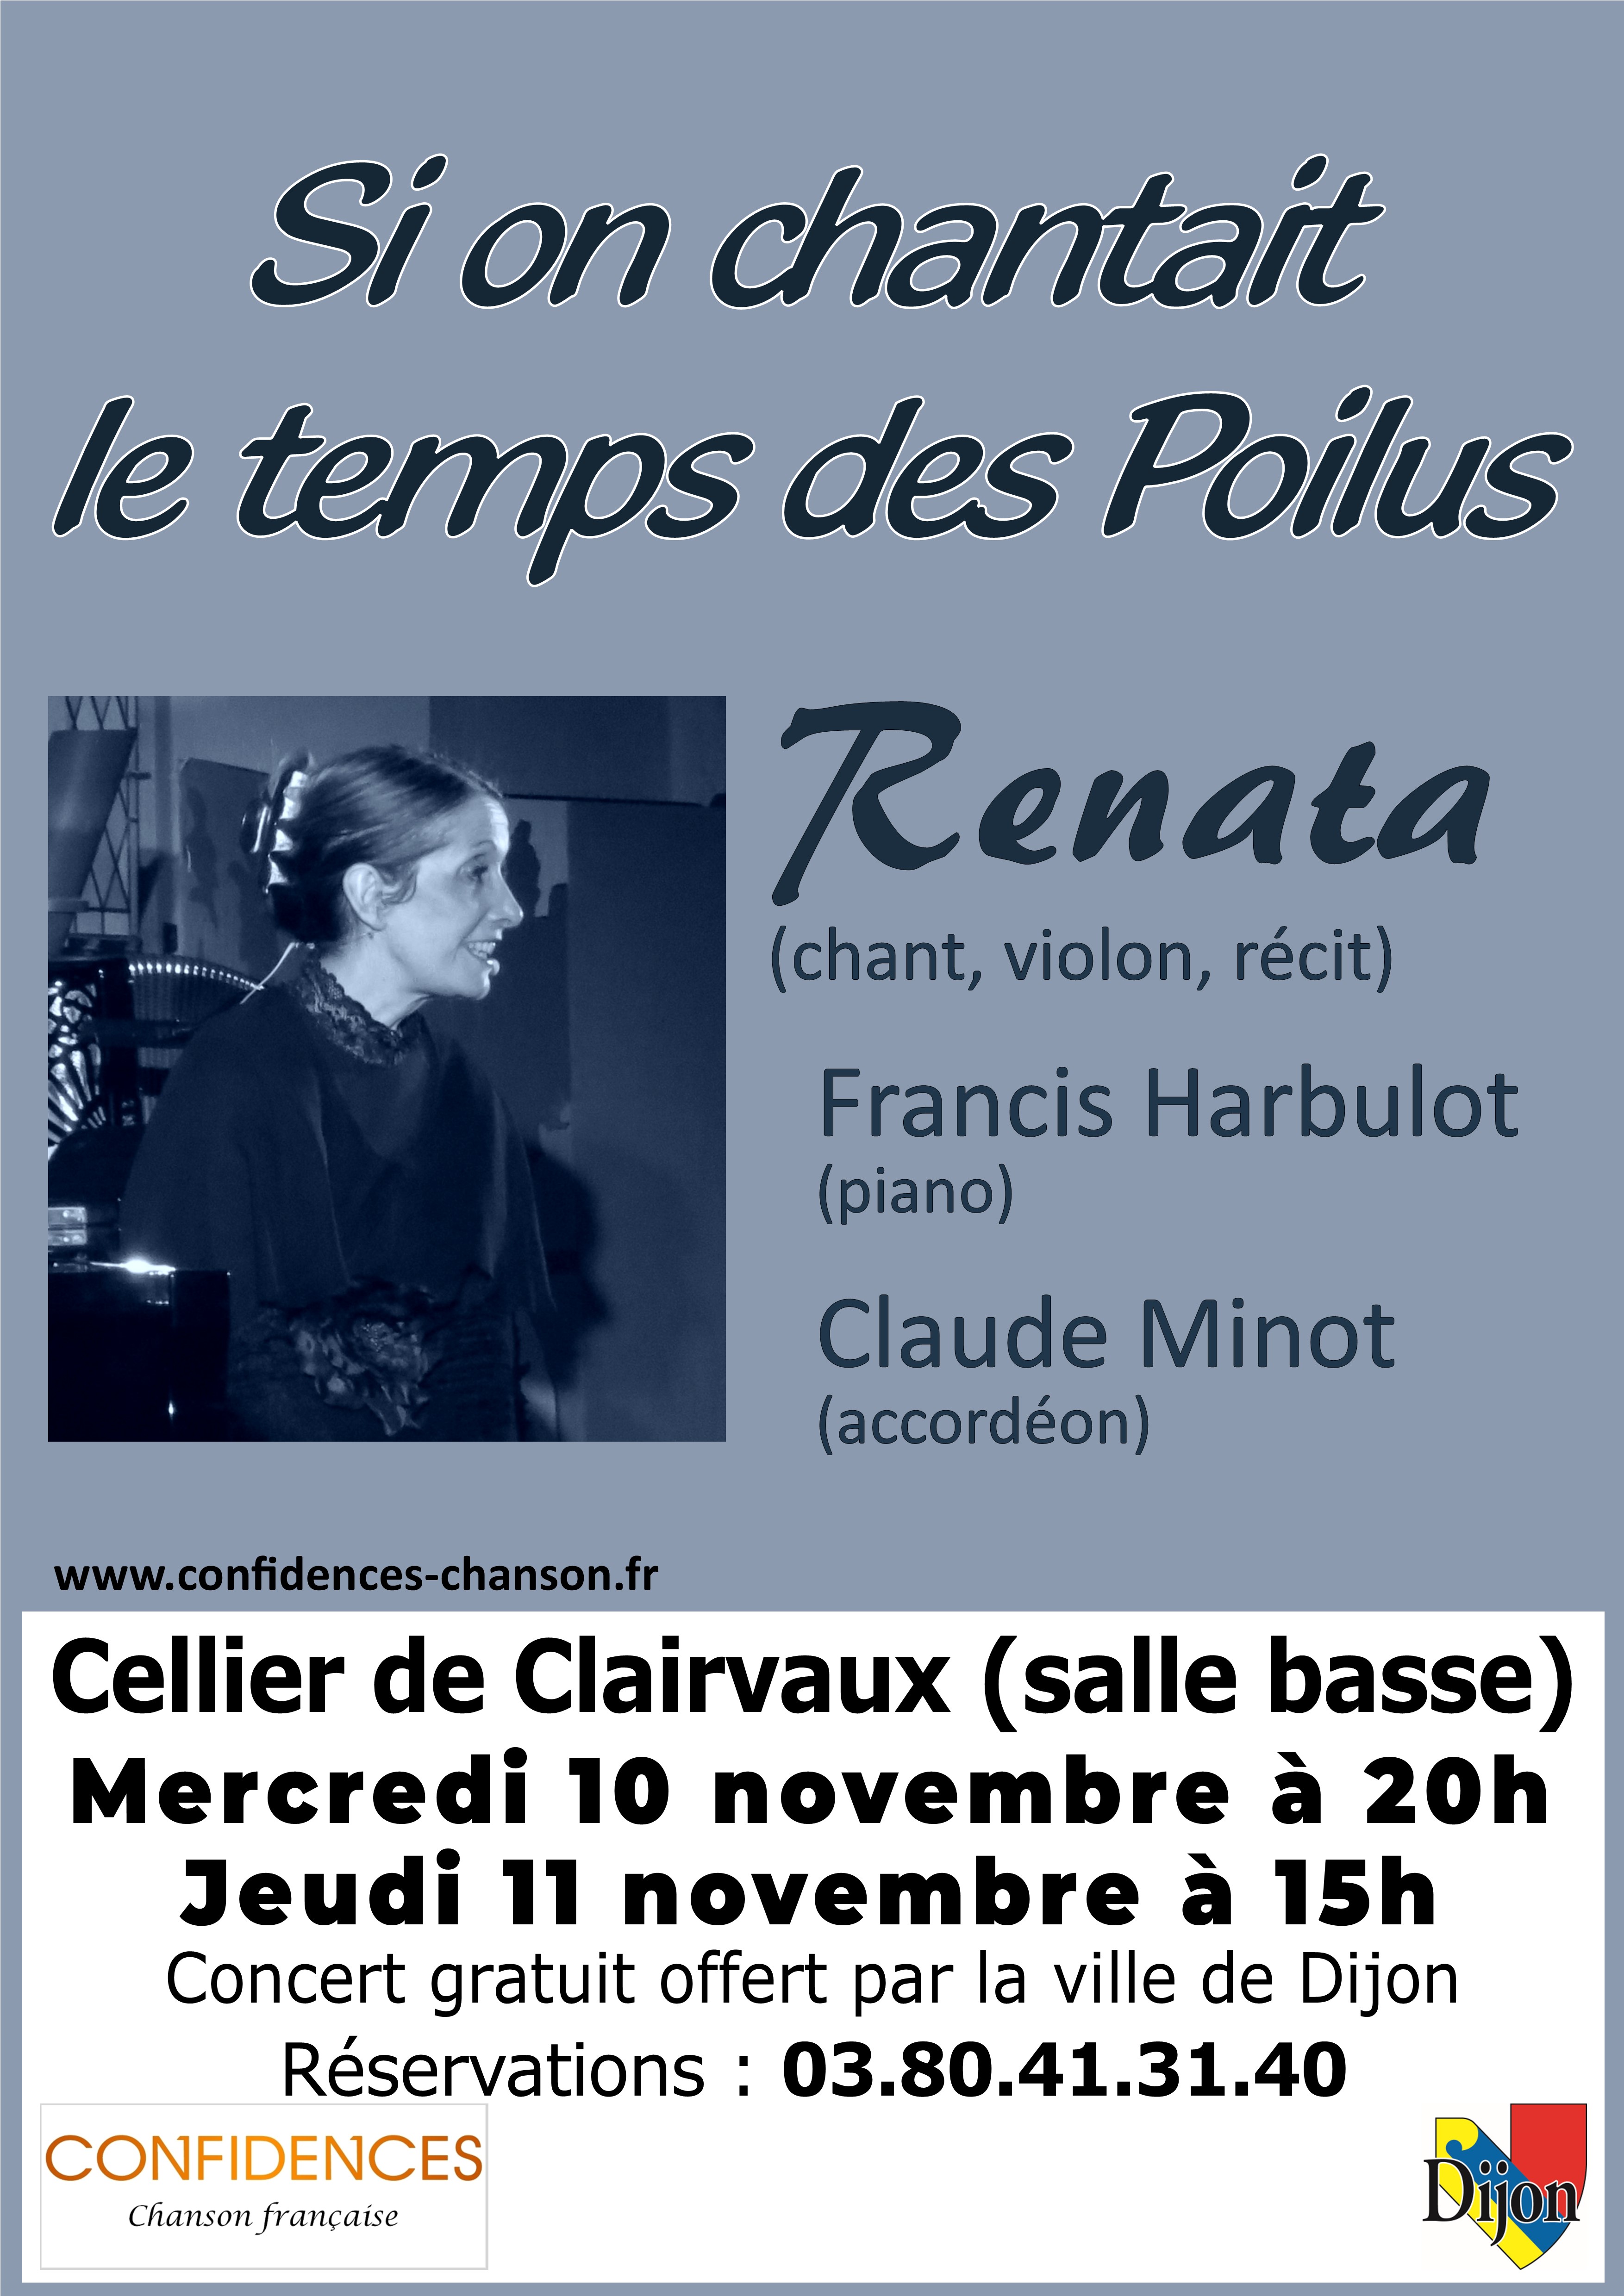 Affiche 'Si on chantait le temps des Poilus' Dijon novembre 2021